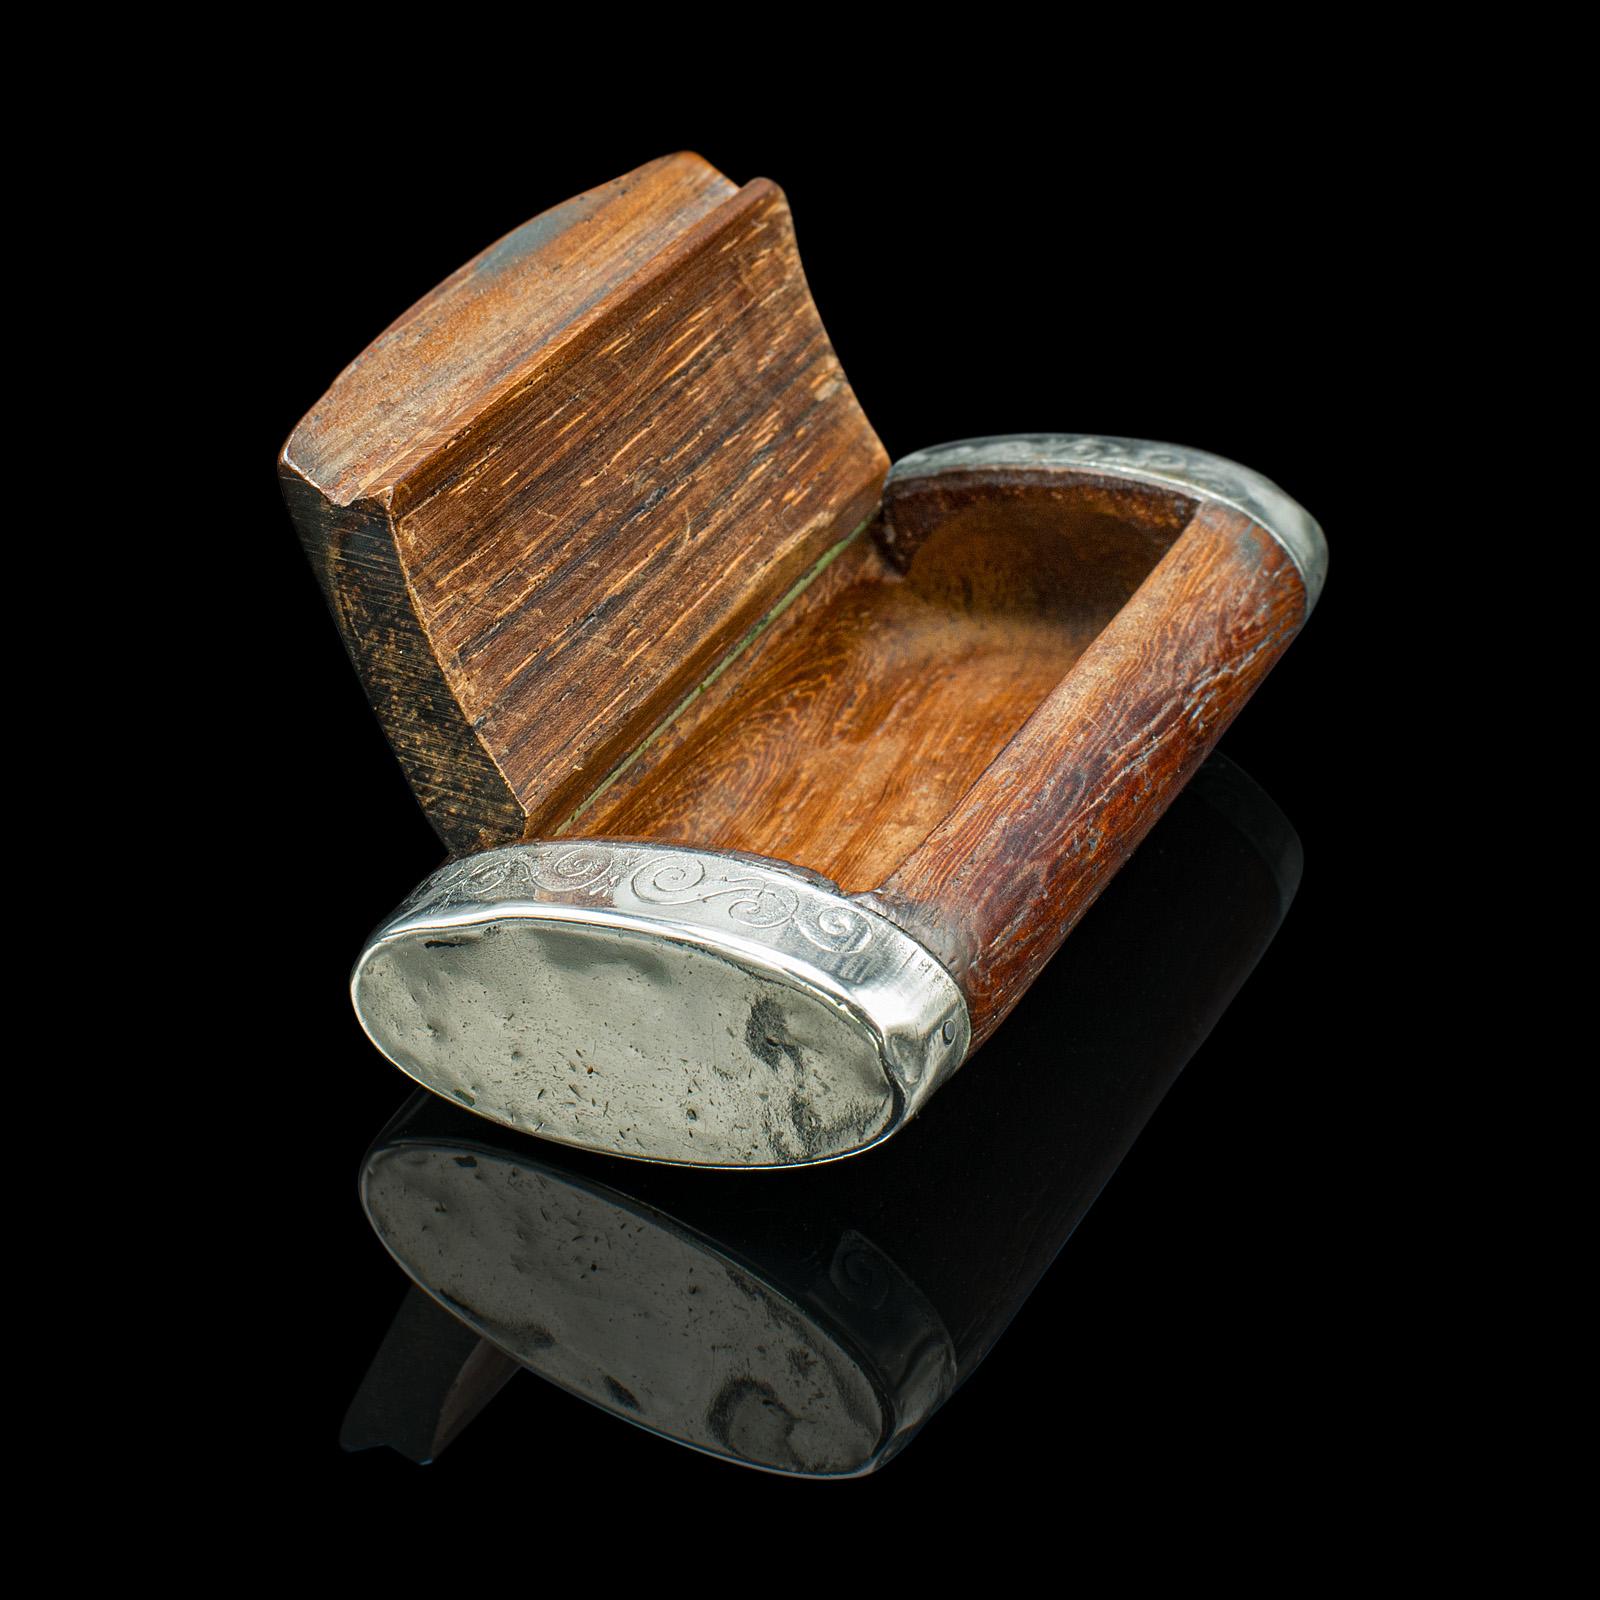 Il s'agit d'une petite boîte à pilules ancienne. Un coffret de poche français, en noyer et plaqué argent, datant de la fin de la période victorienne, vers 1900.

Charmante petite boîte en bois, idéale pour la poche du manteau
Présente une patine